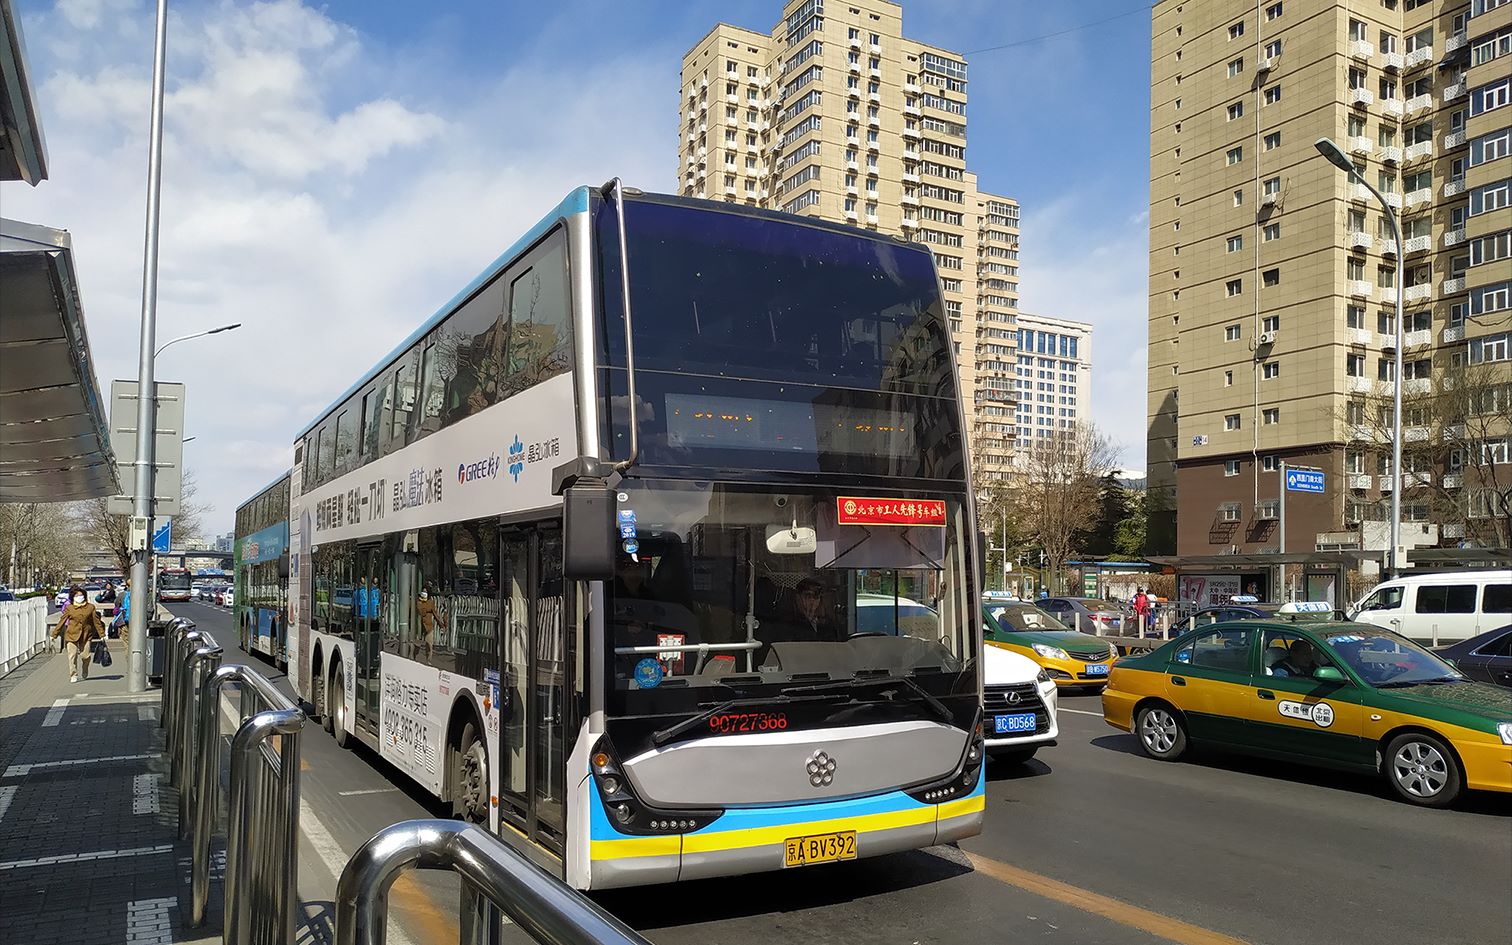 北京公交44路内环图片